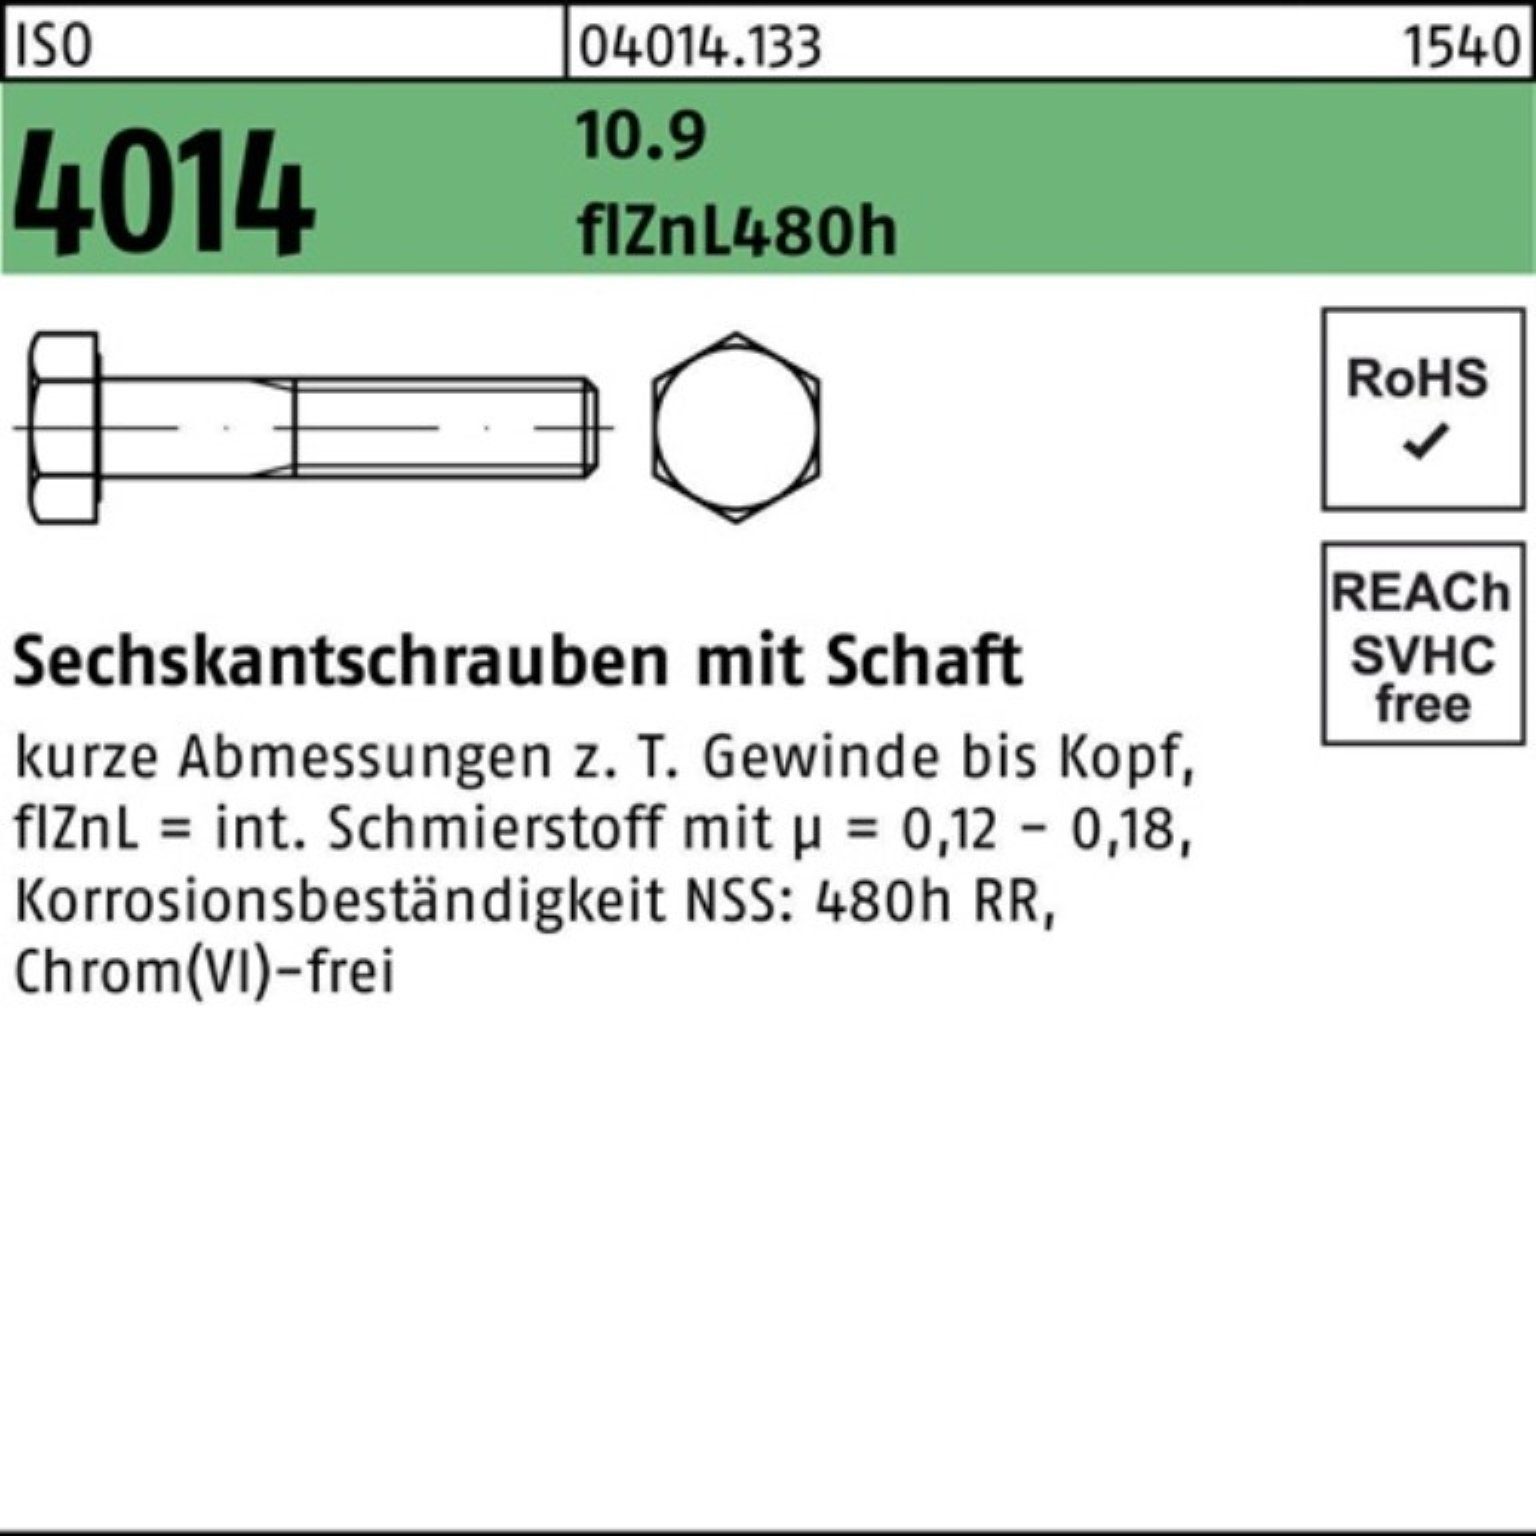 zinklamellenb Pack Sechskantschraube M6x Schaft Sechskantschraube 4014 ISO Bufab 10.9 60 200er